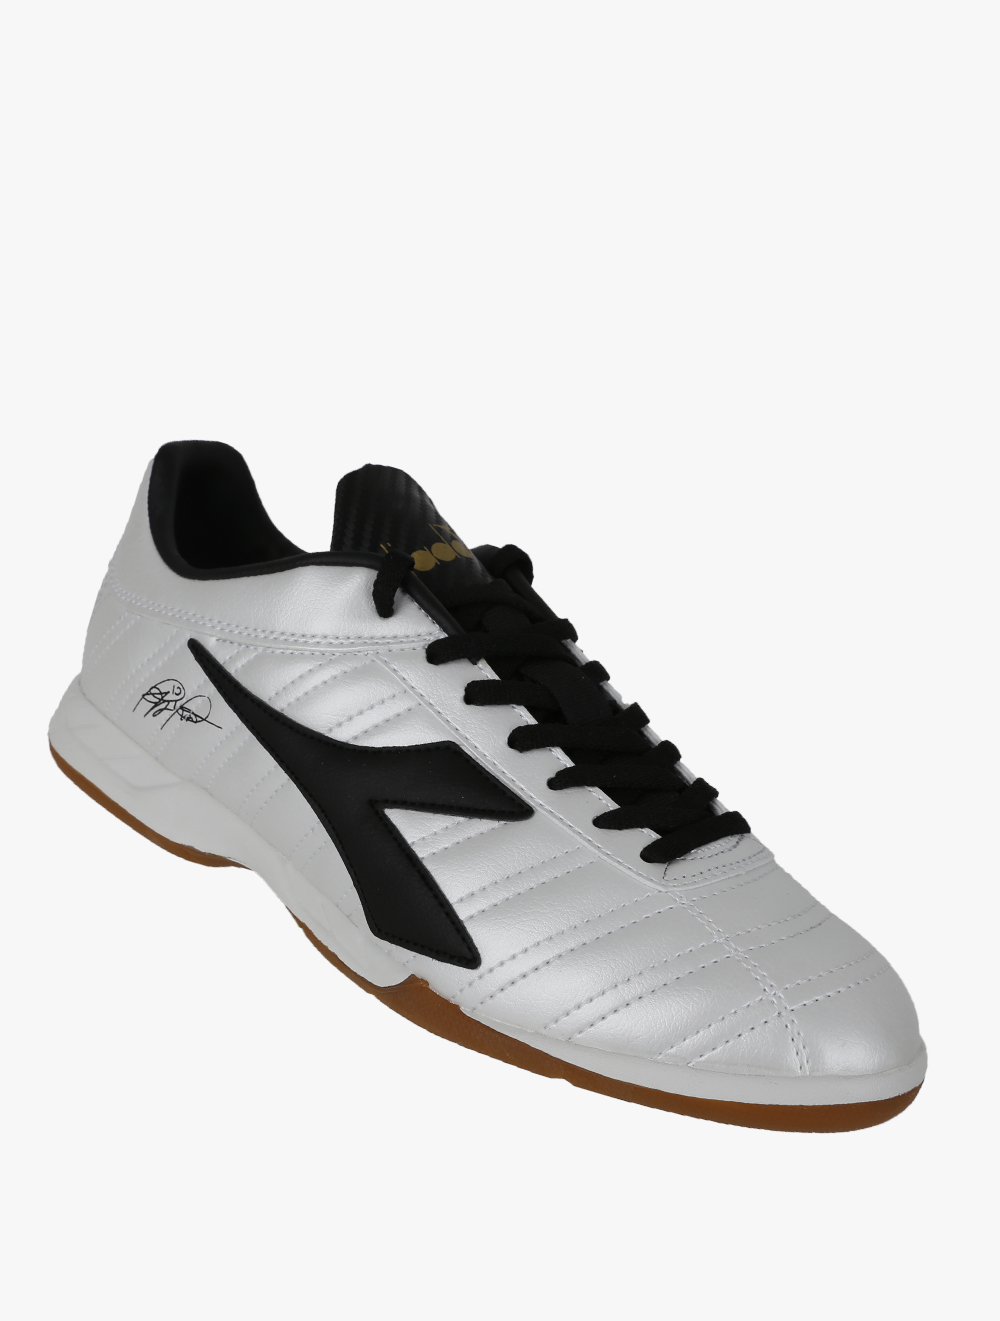 Diadora Baggio 03 R Id Chaussures de Futsal Homme